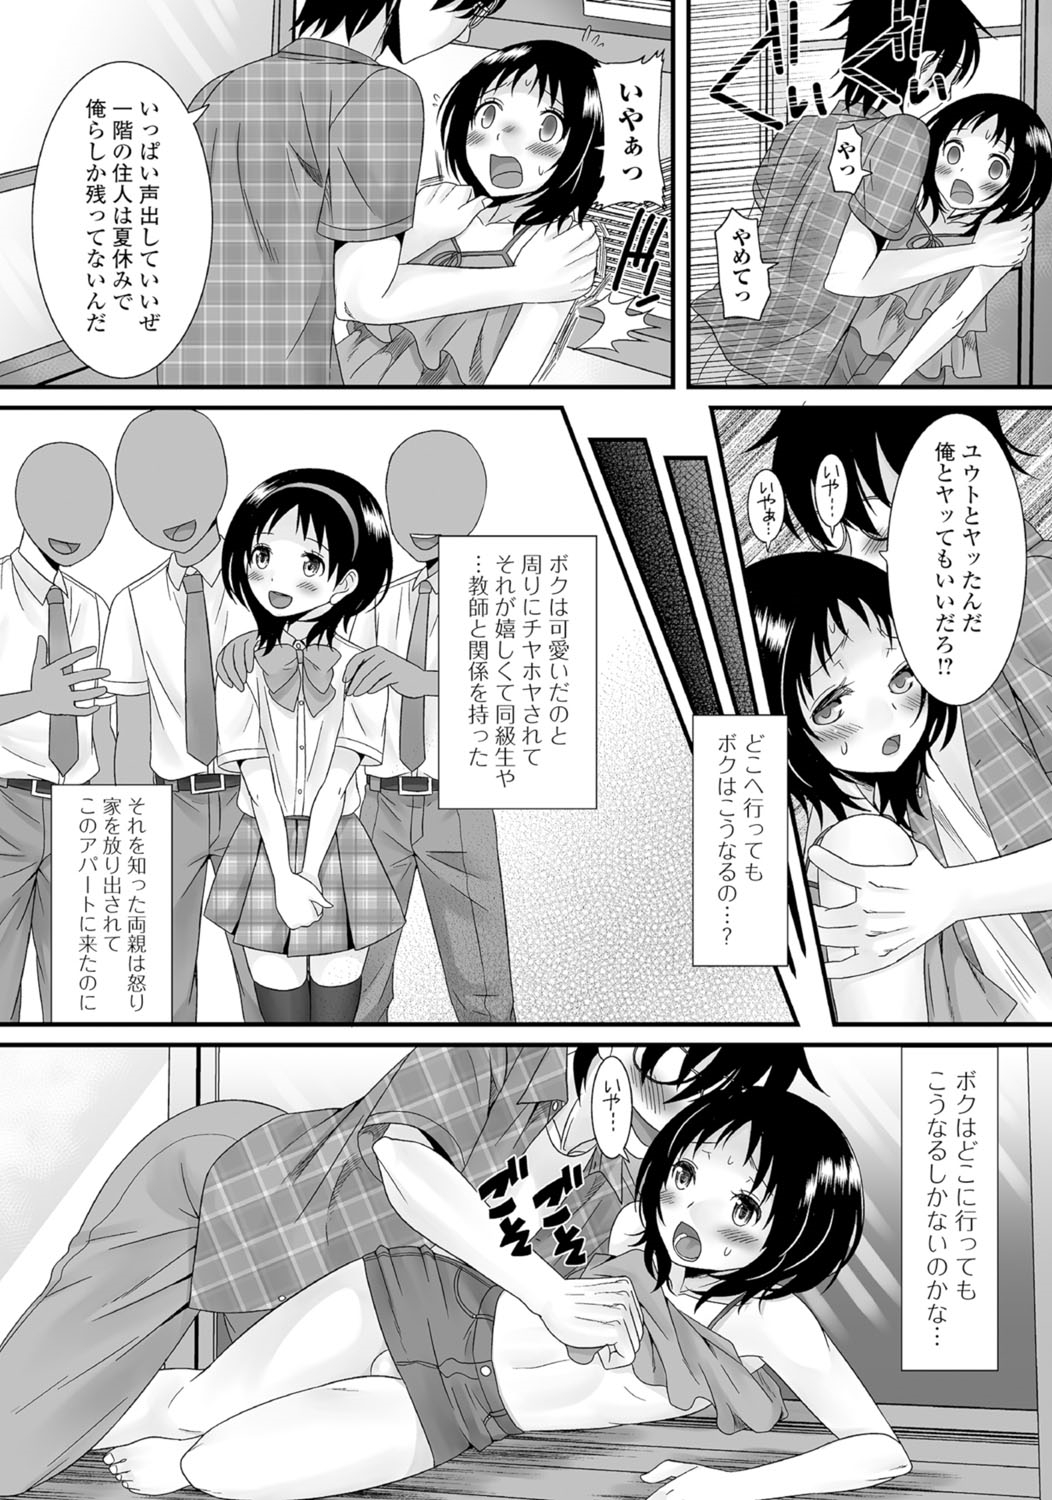 [Anthology] Gekkan Web Otoko no Ko-llection! S Vol. 05 [Digital] page 5 full